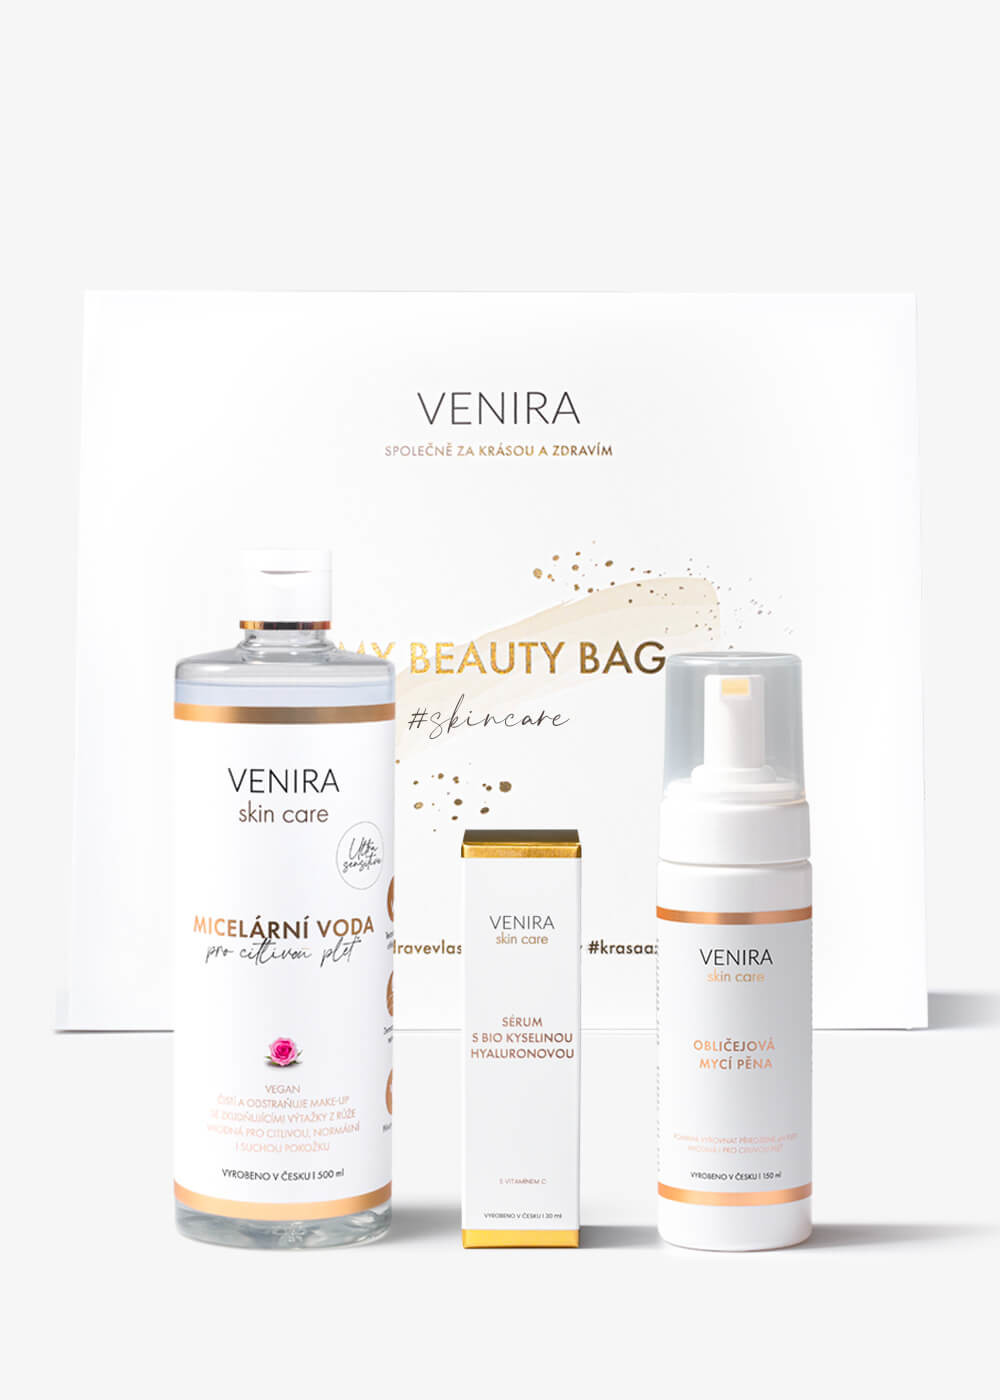 VENIRA beauty bag, dárková sada pro čištění a péči o pleť - obličejová mycí pěna, micelární voda pro citlivou pleť, sérum s bio kyselinou hyaluronovou a vitaminem c